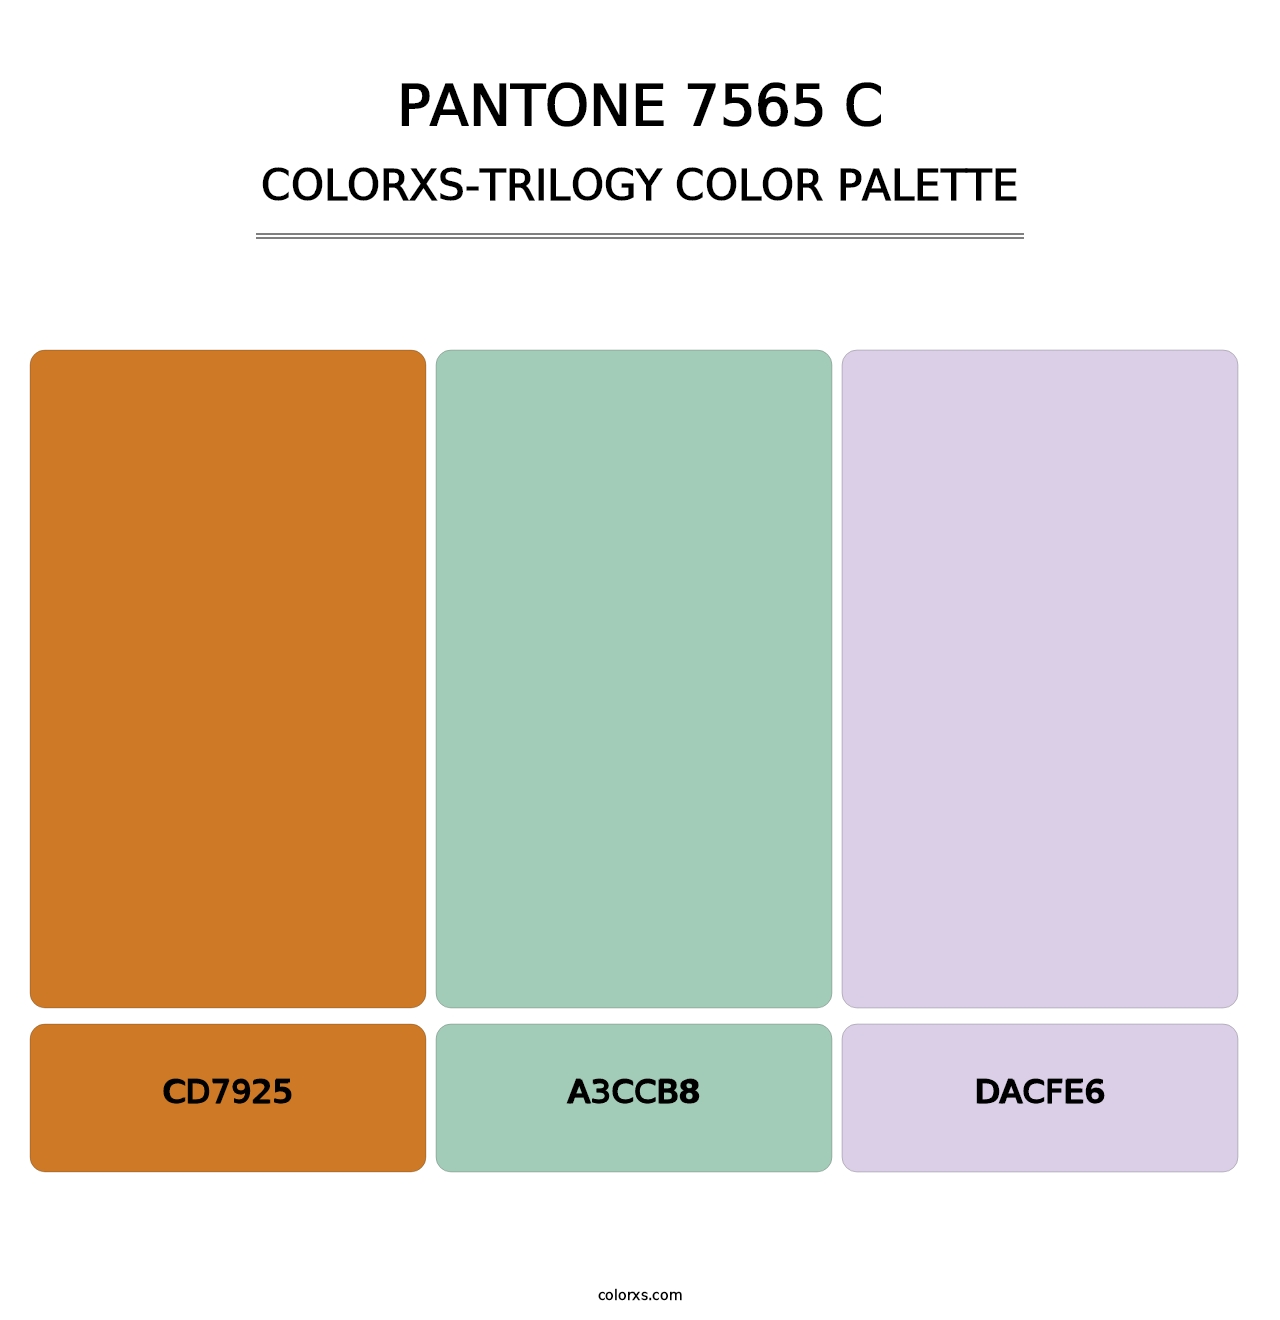 PANTONE 7565 C - Colorxs Trilogy Palette